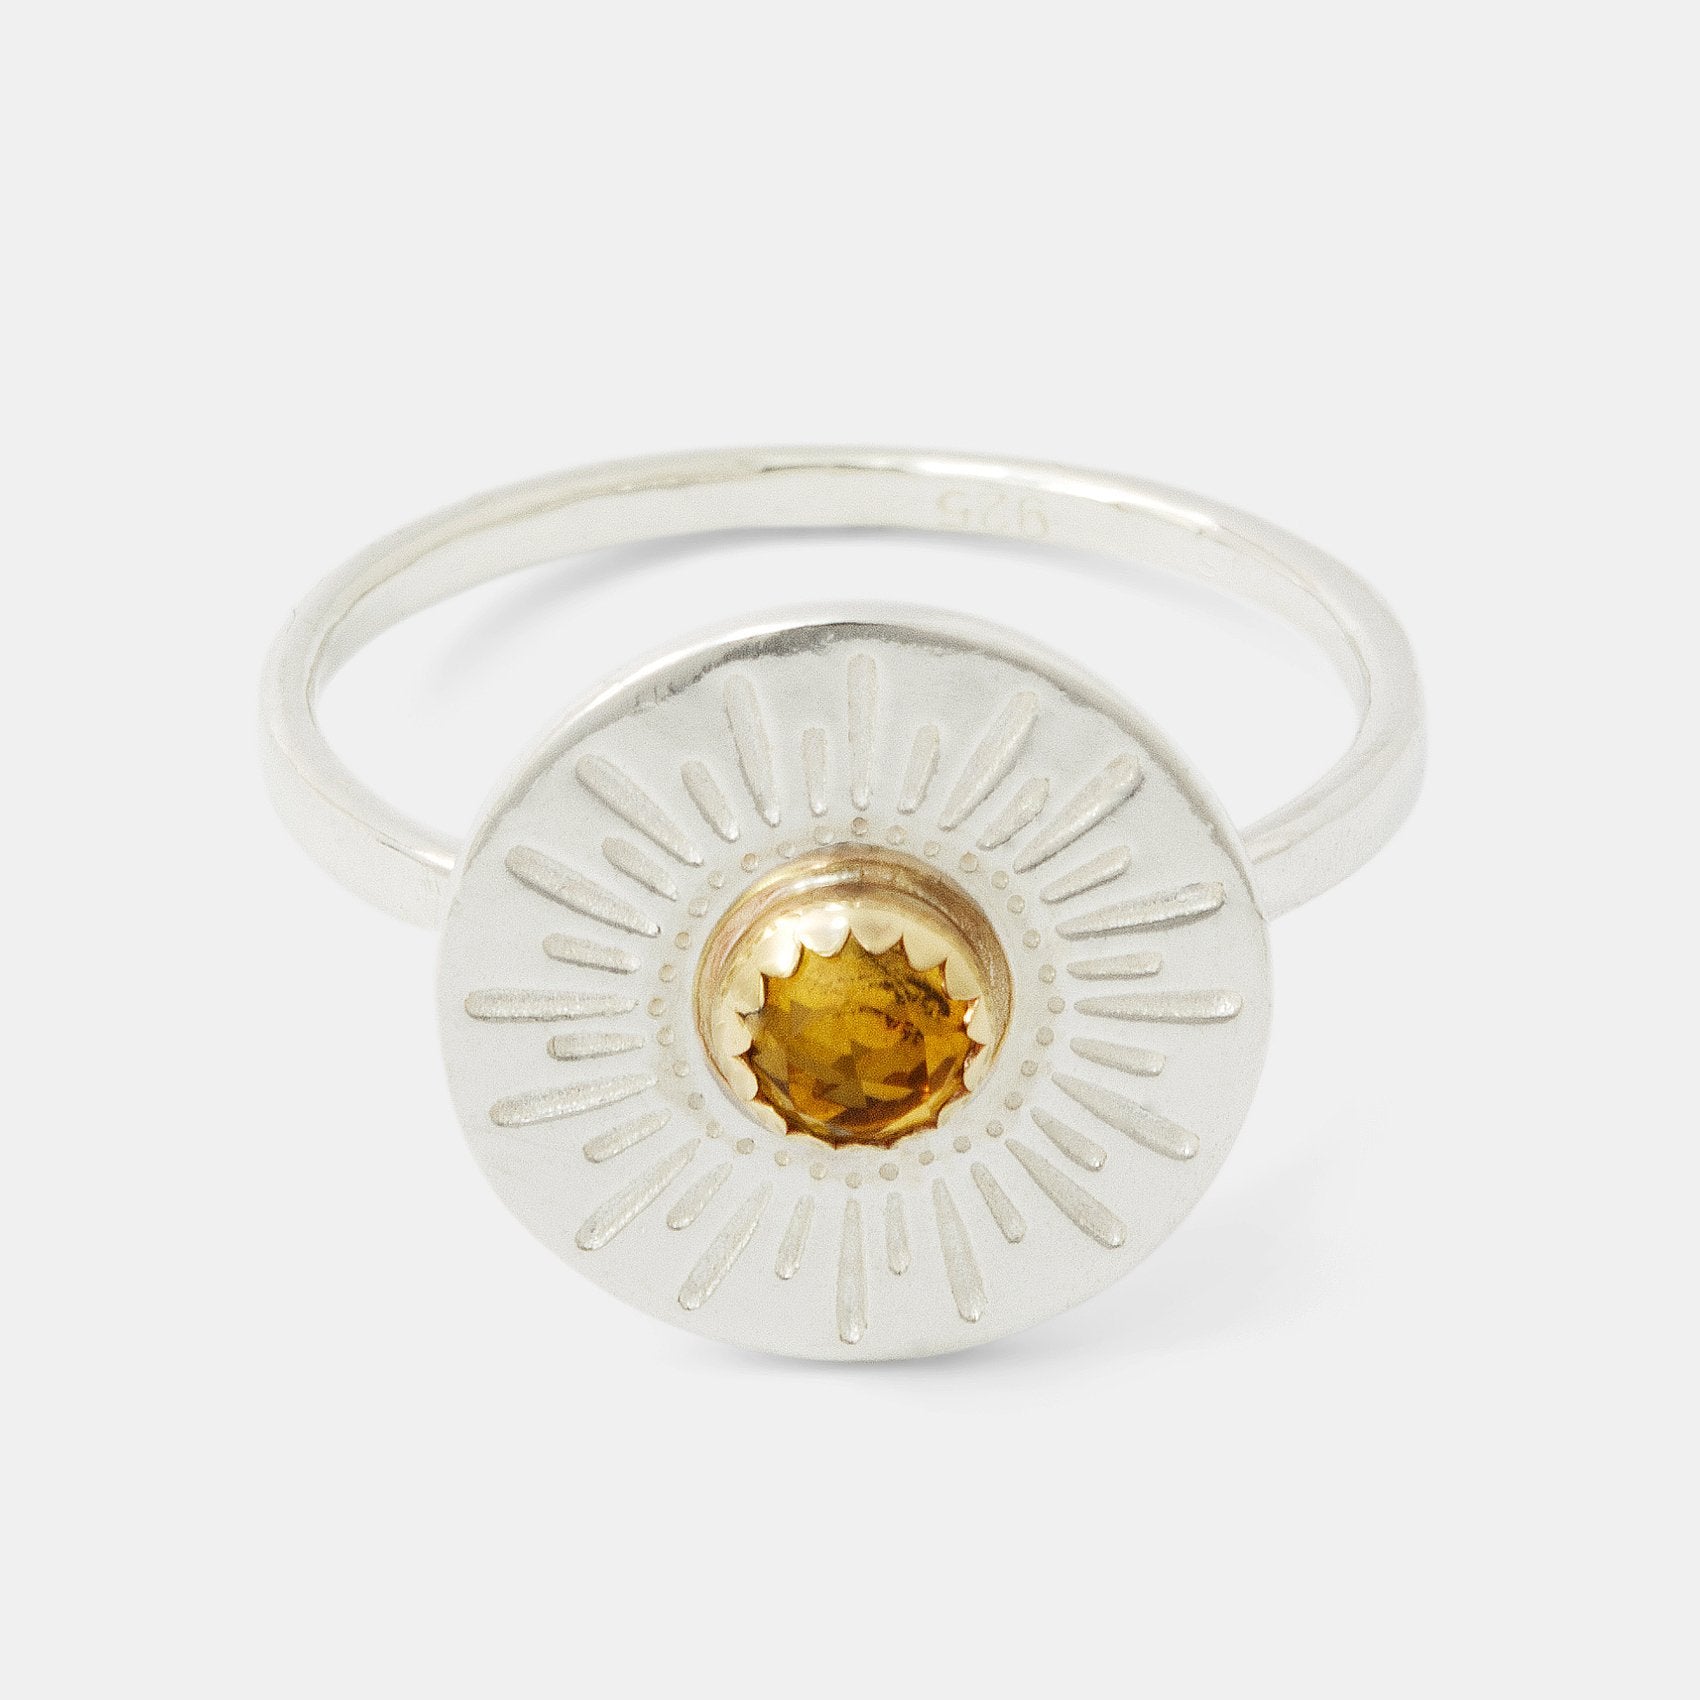 Sunburst & citrine amulet ring - Simone Walsh Jewellery Australia